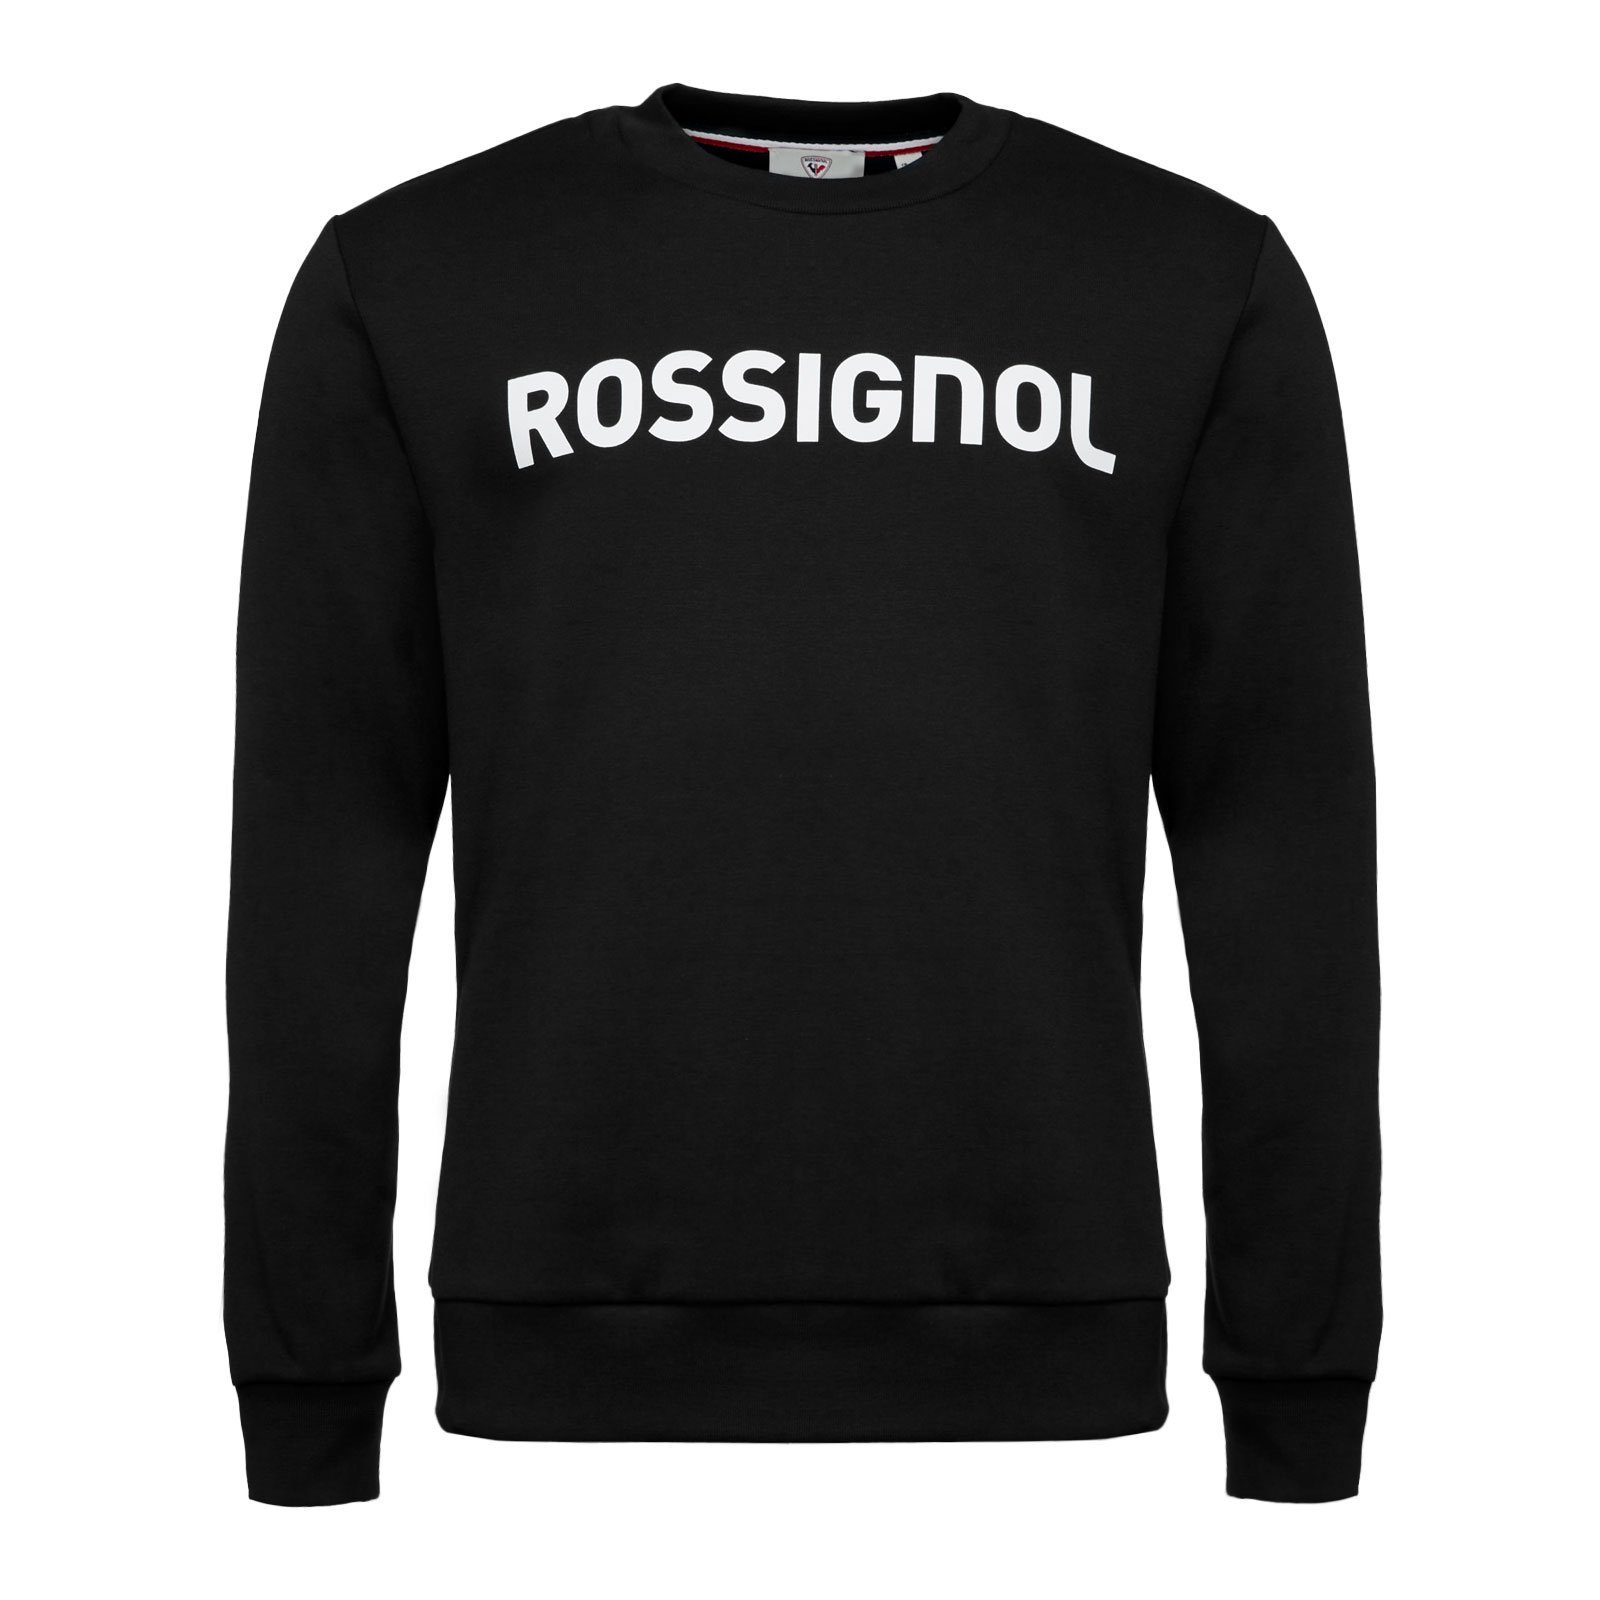 Rossignol Sweatshirt Logo Sweater mit plakativem Markenschriftzug